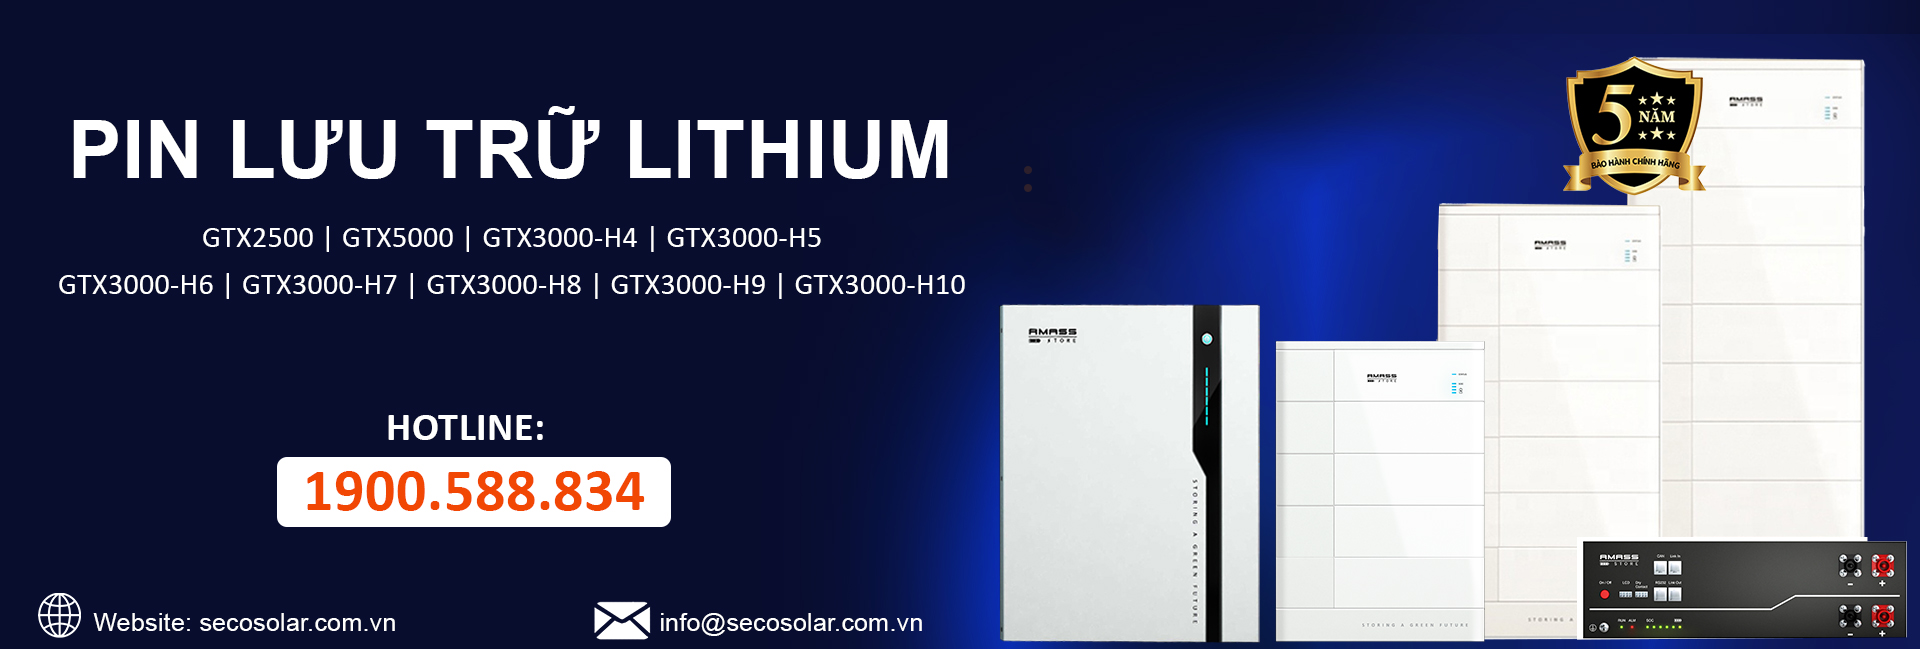 Pin lưu trữ Lithium GTX điện mặt trời